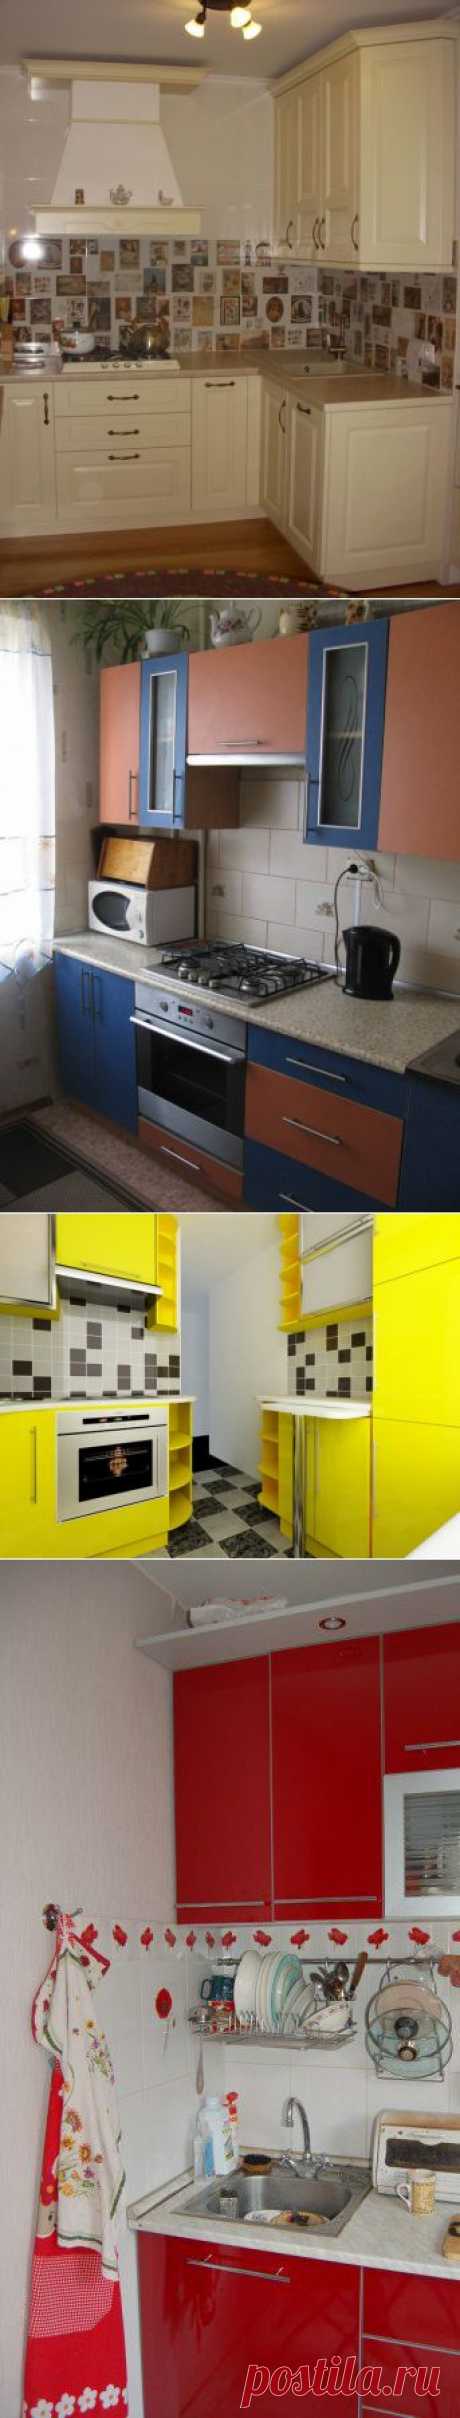 Кухни 6 кв м — фотоотчеты по дизайну и планировке